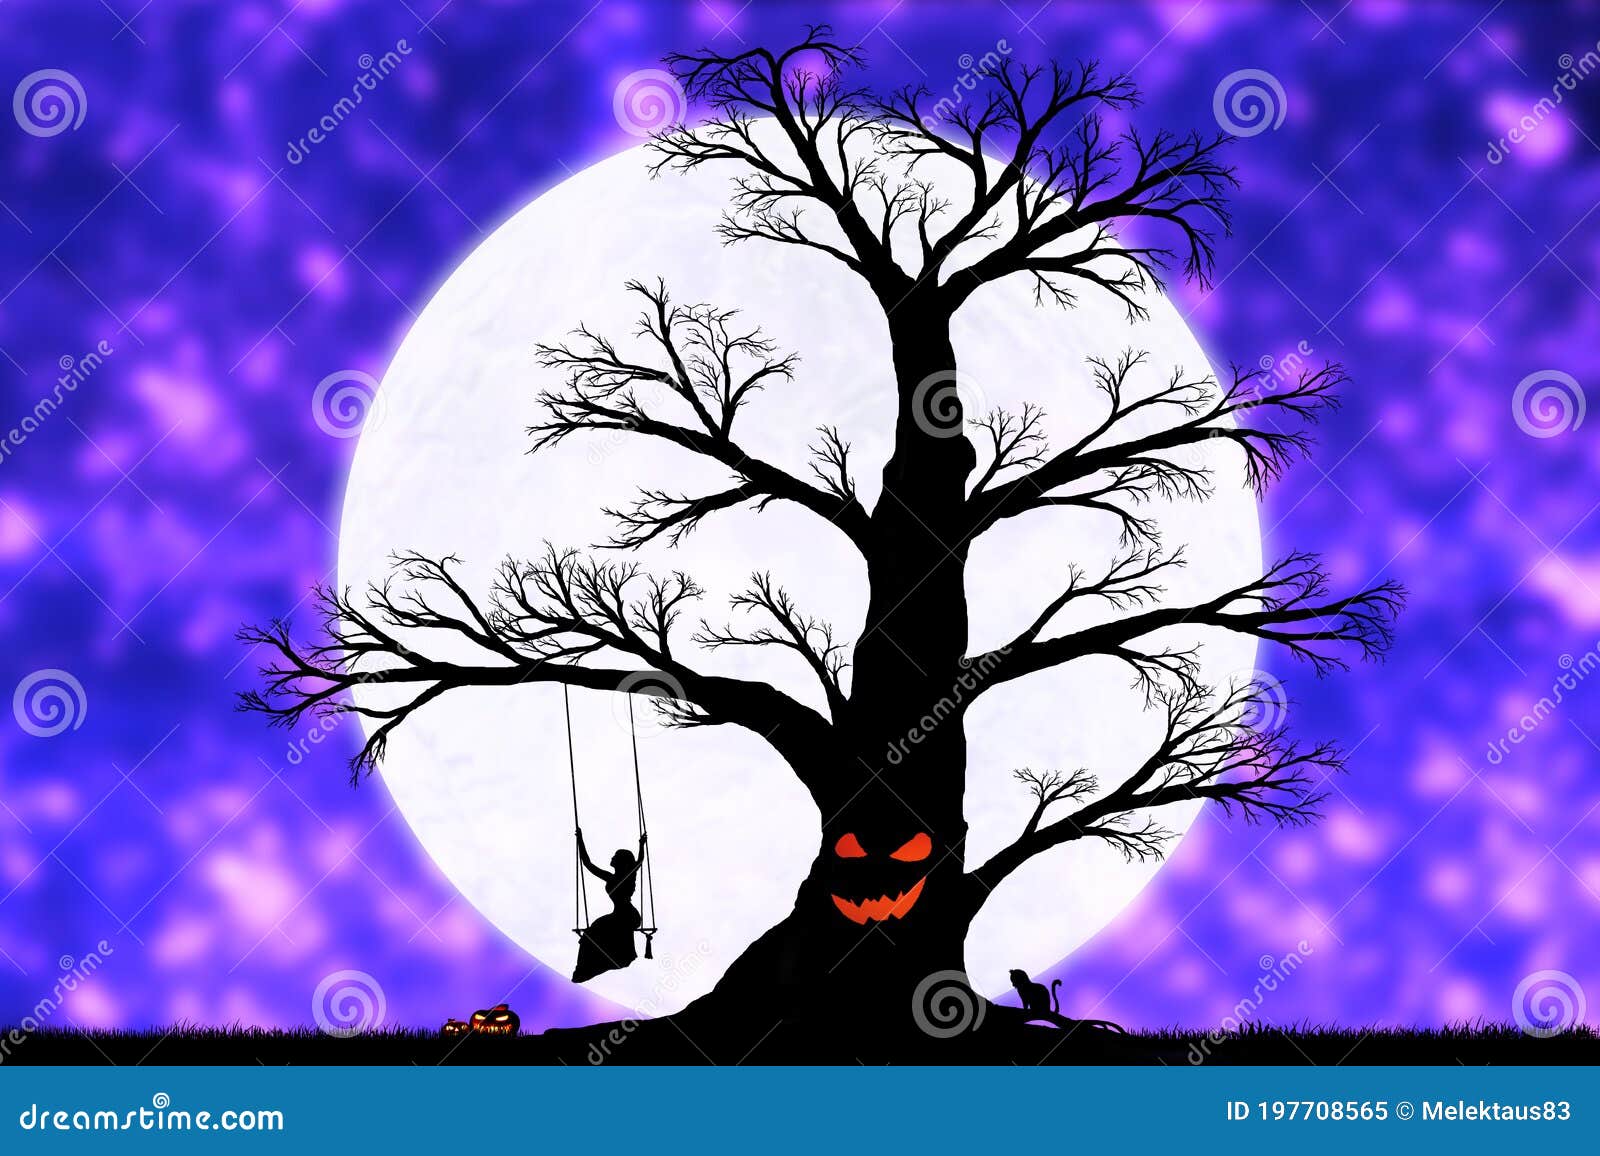 Γυναίκα σε μια κούνια σε ένα δέντρο στο φόντο μιας μεγάλης σελήνης  Απεικόνιση αποθεμάτων - εικονογραφία από brampton: 197708565